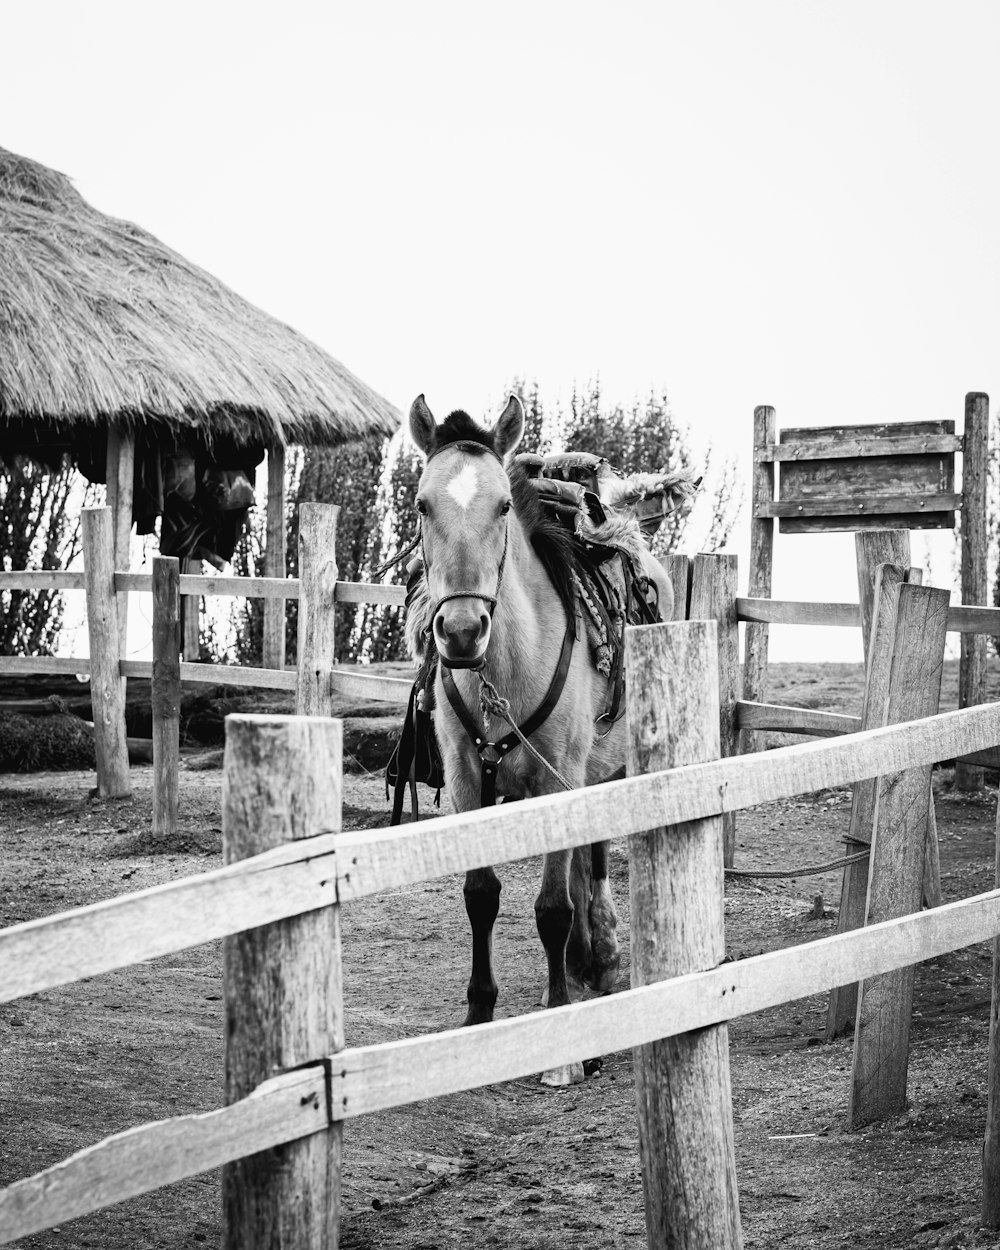 Foto in scala di grigi di 2 cavalli su staccionata di legno